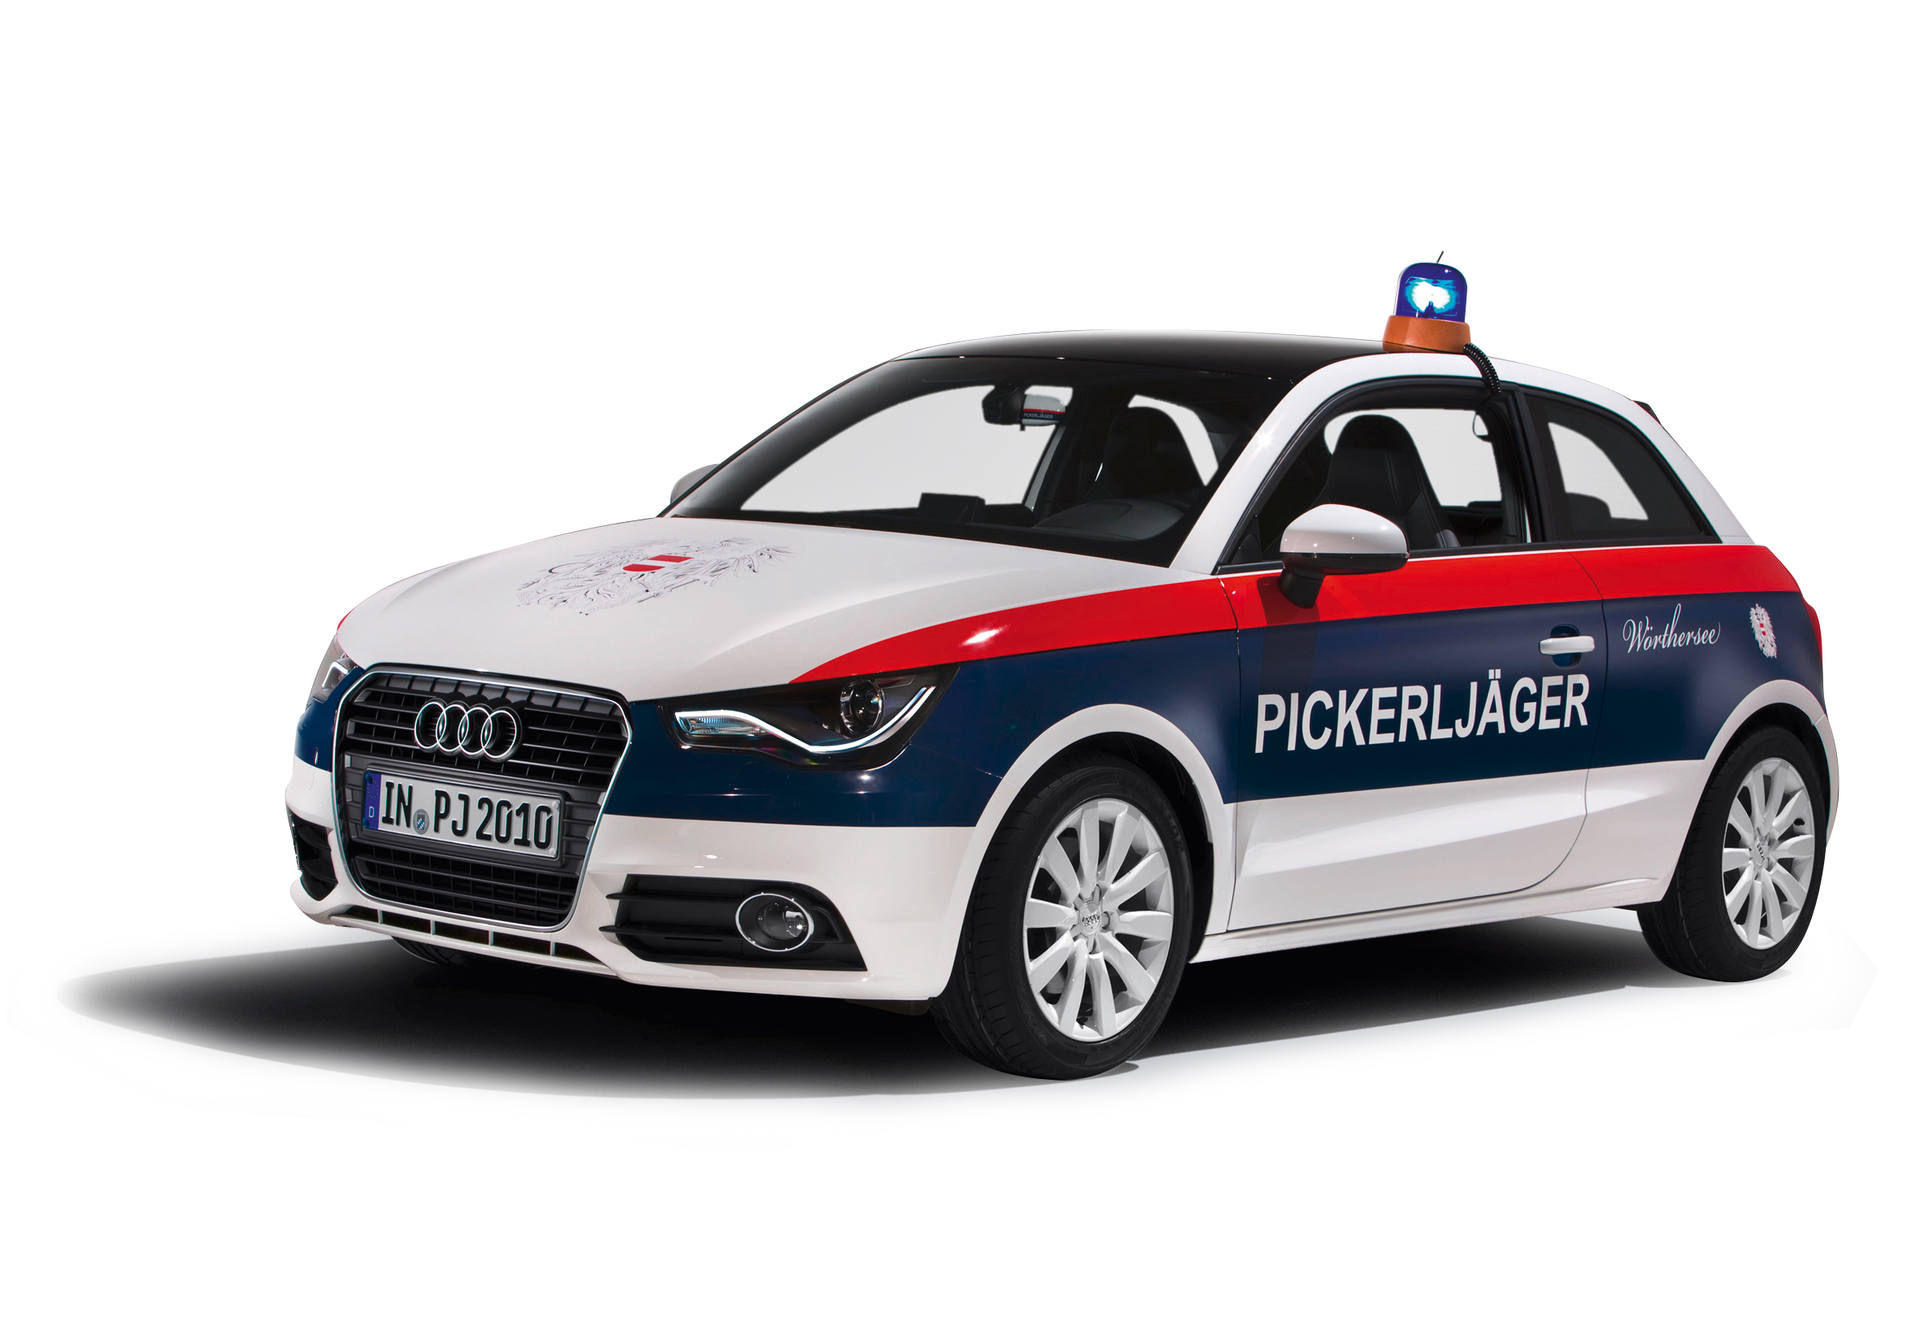 Audi A1 "Pickerljaeger"